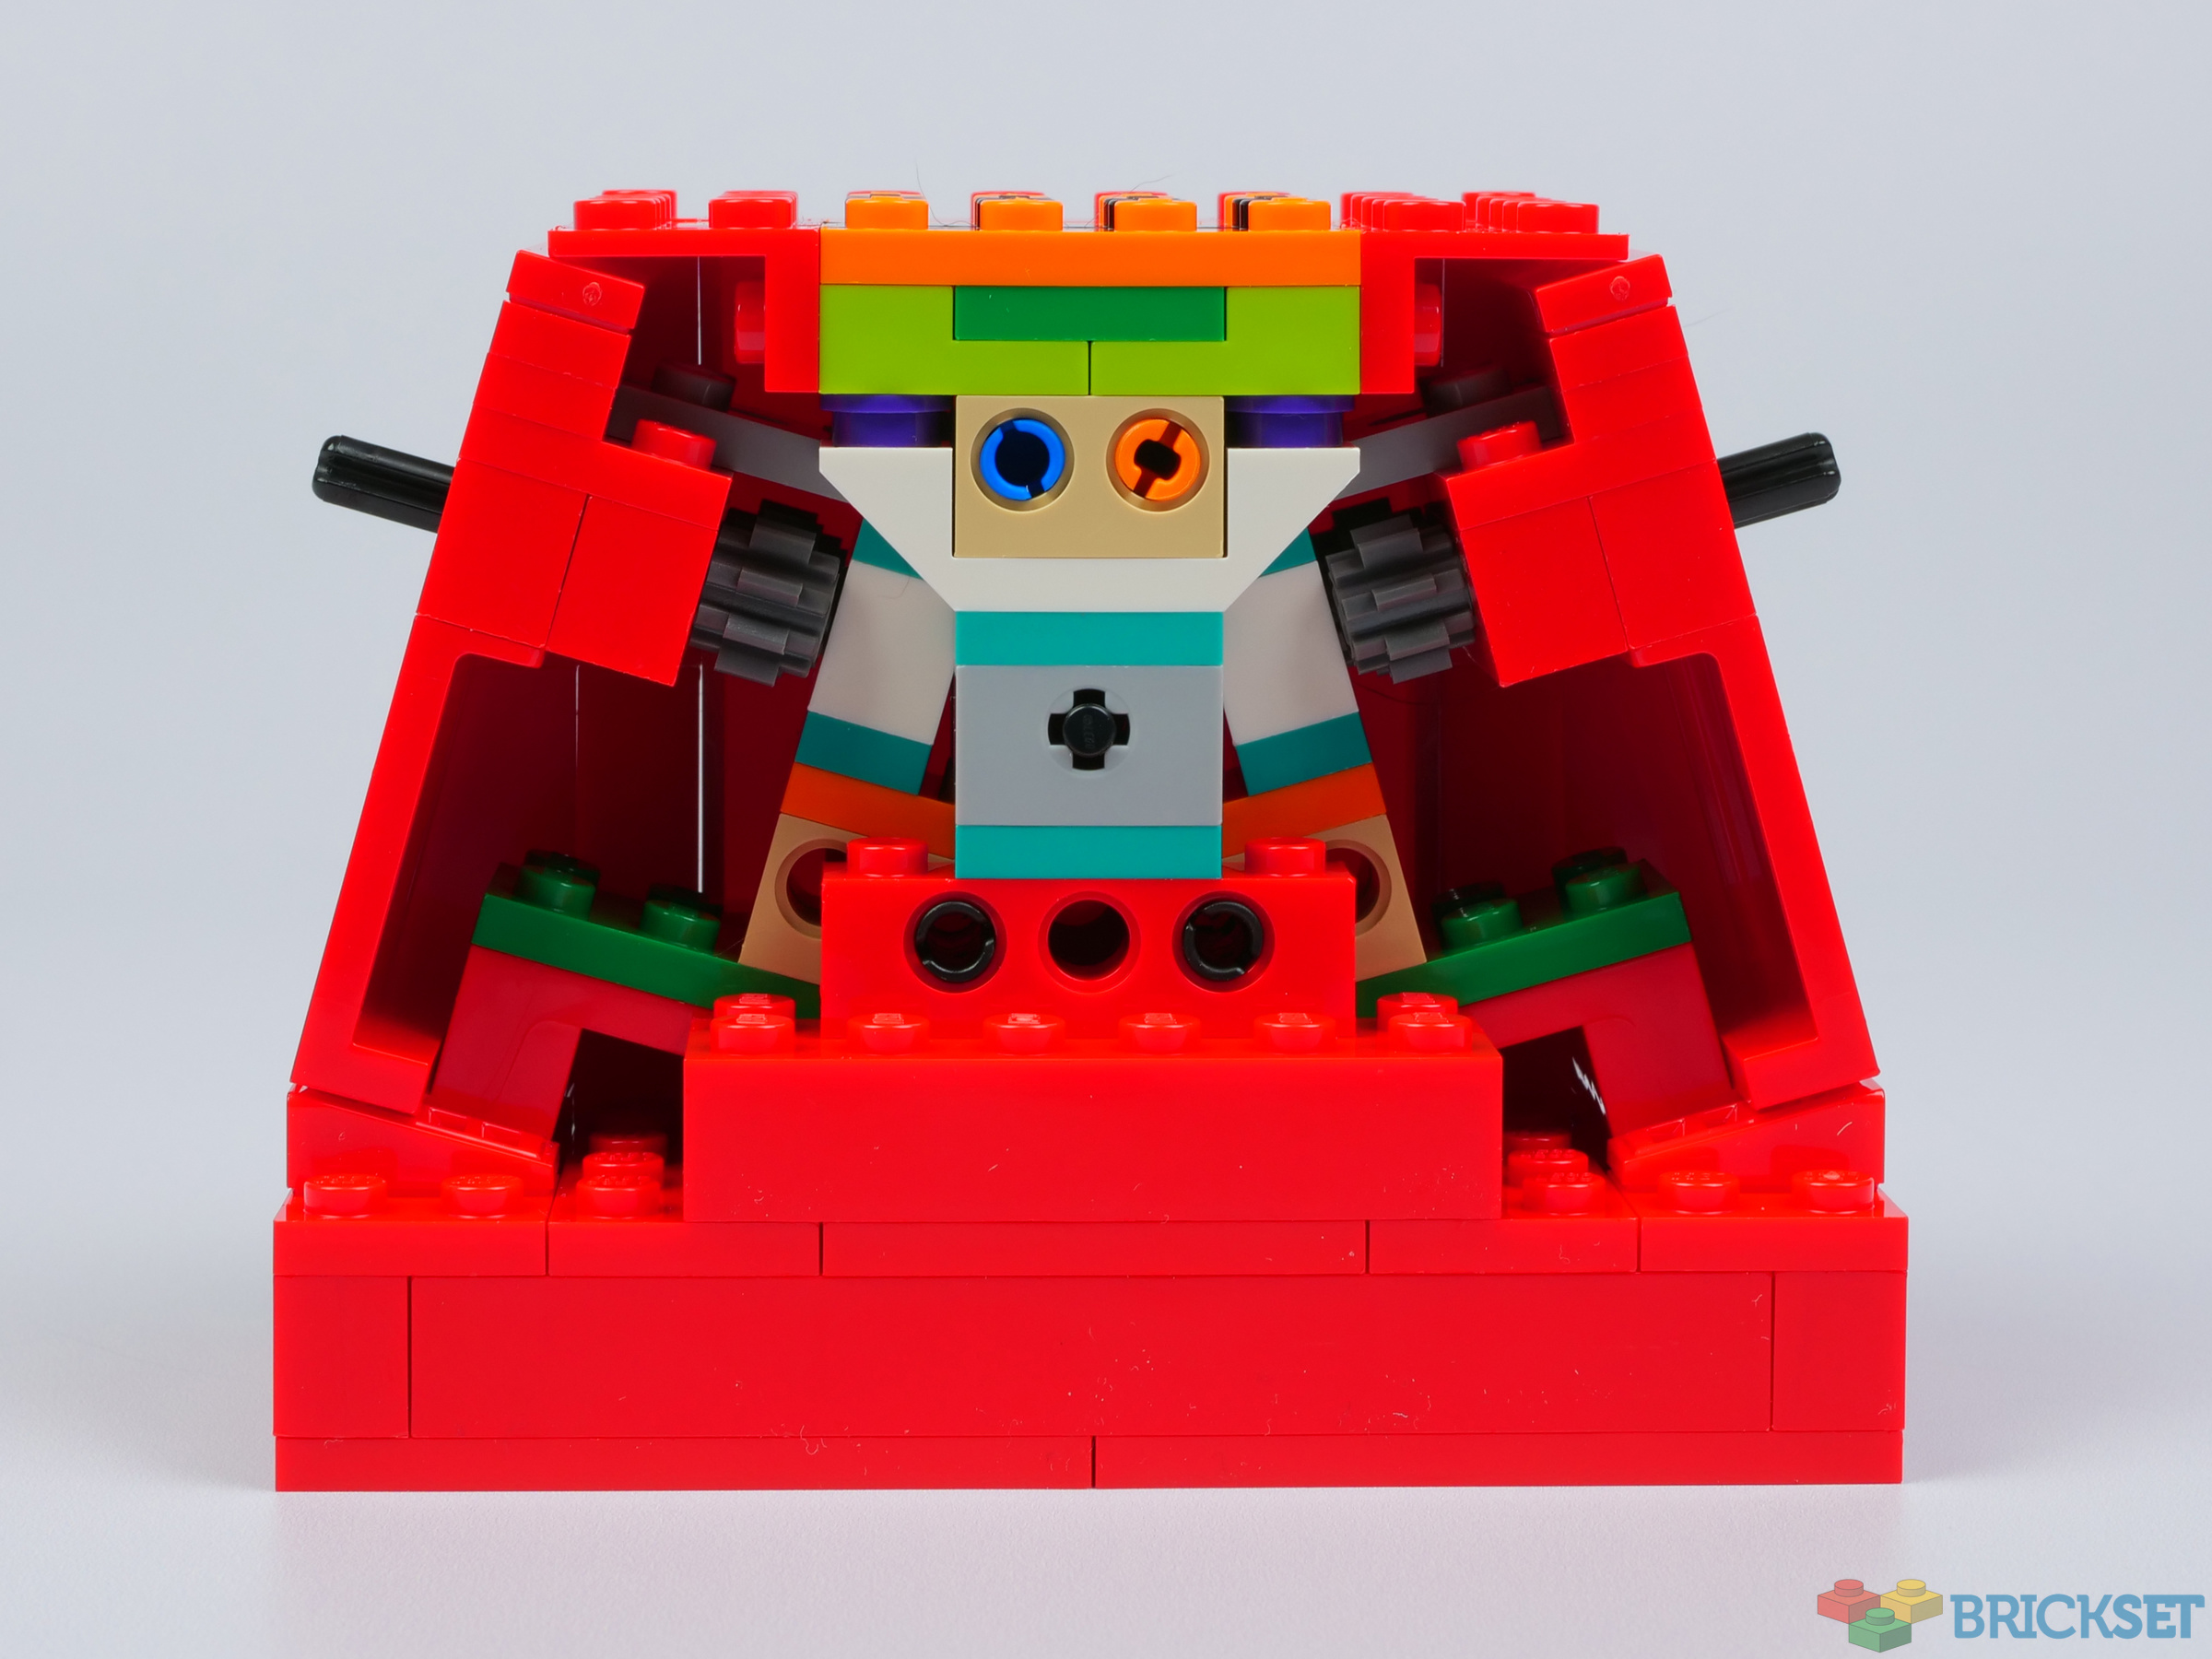 LEGO 40649 Up-Scaled LEGO Minifigure review | Brickset